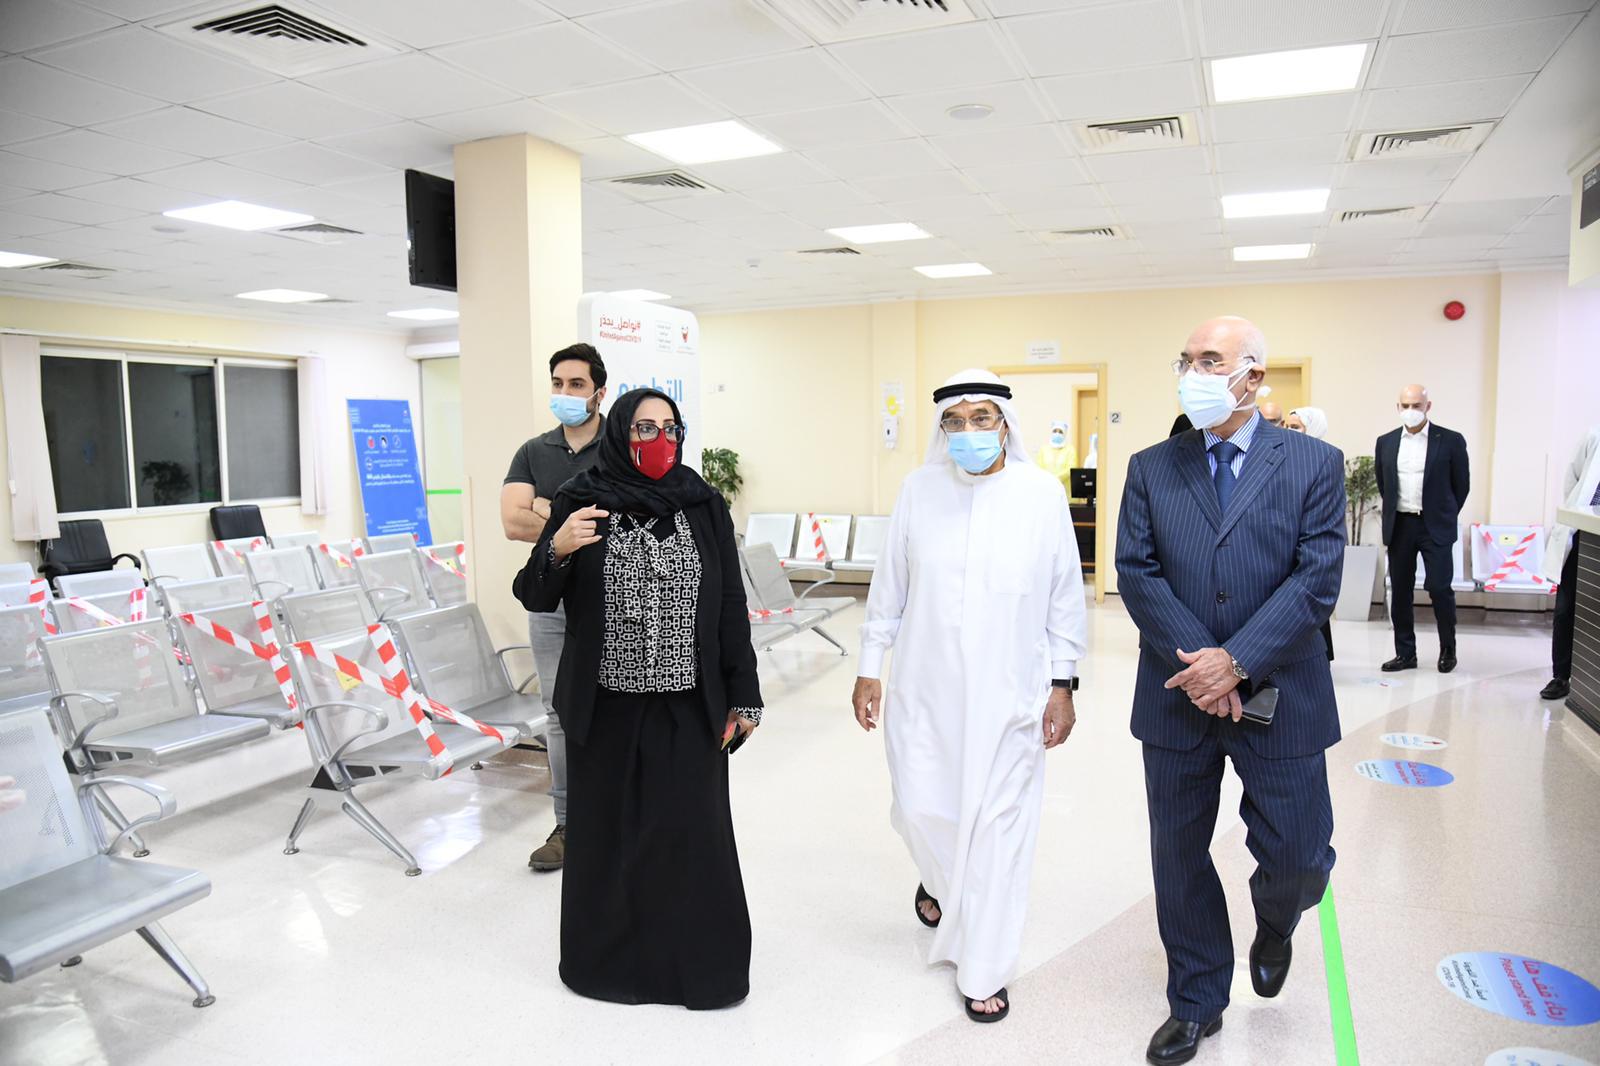 رئيس المجلس الأعلى للصحة يزور مركز الشيخ جابر الصحي في باربار ويشيد بما اشتمل عليه من إمكانيات وتجهيزات متقدمة